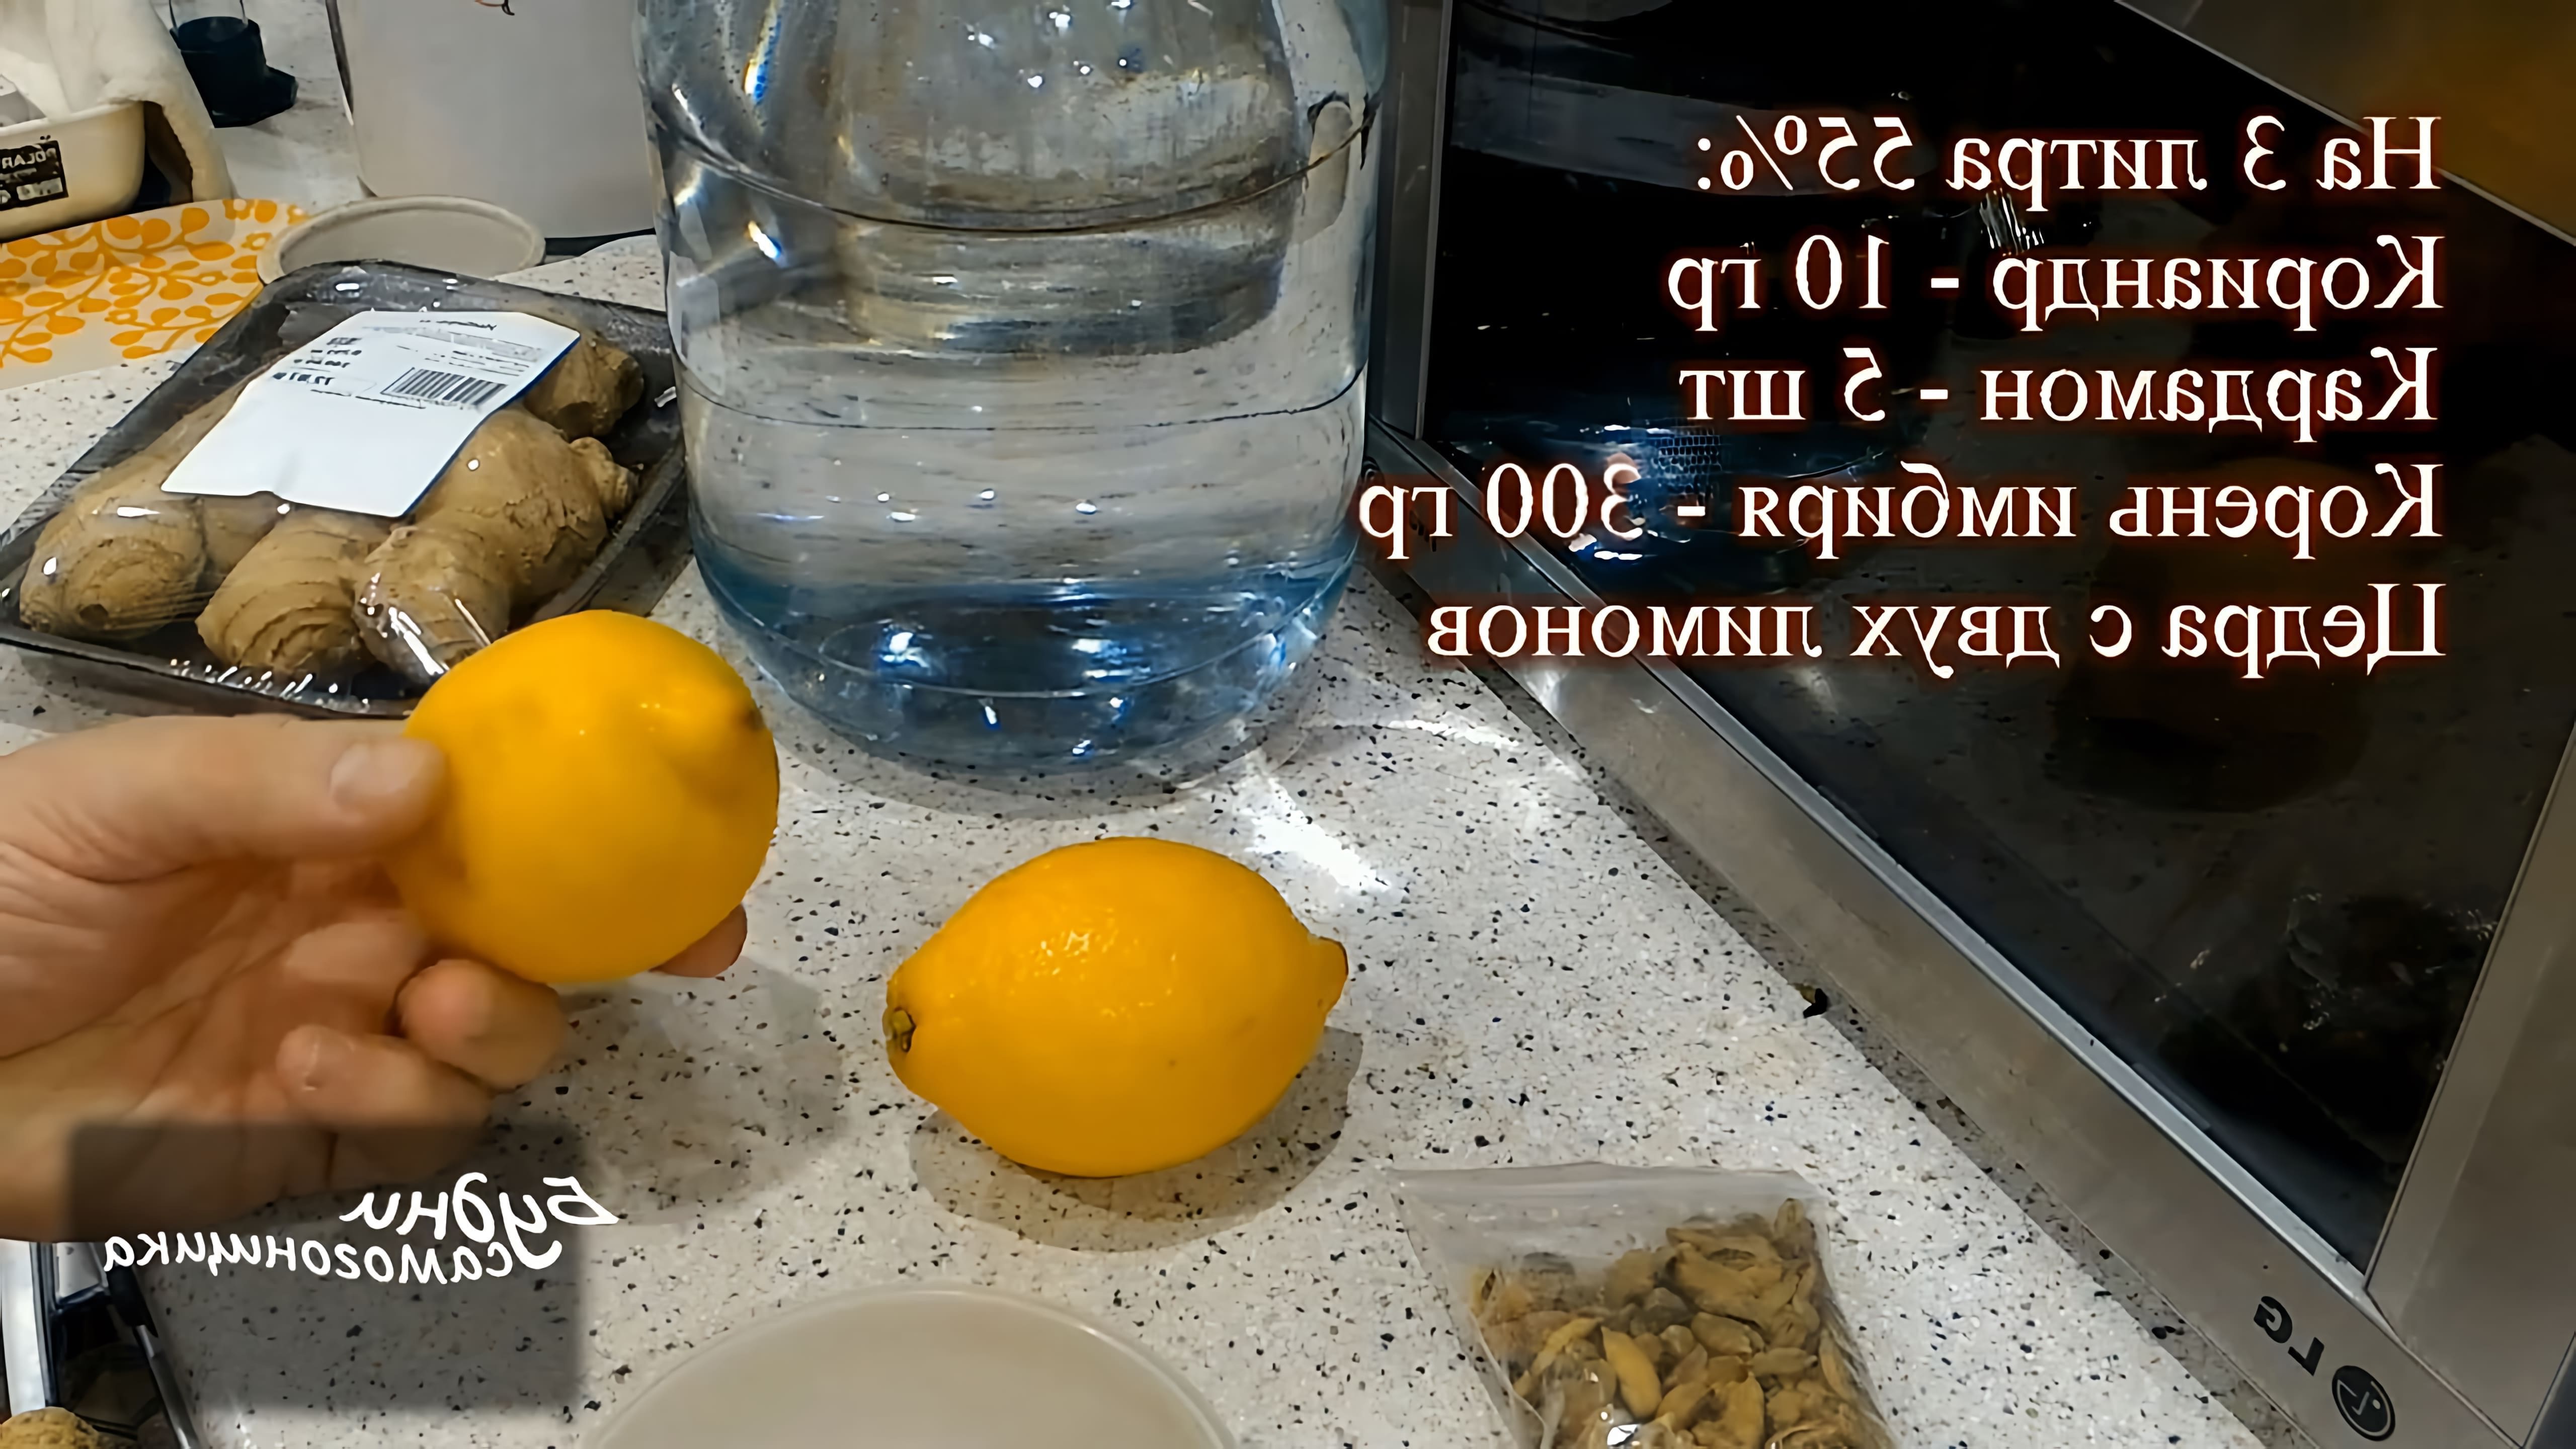 В данном видео демонстрируется процесс изготовления имбирной настойки по рецепту Александра Панфилова